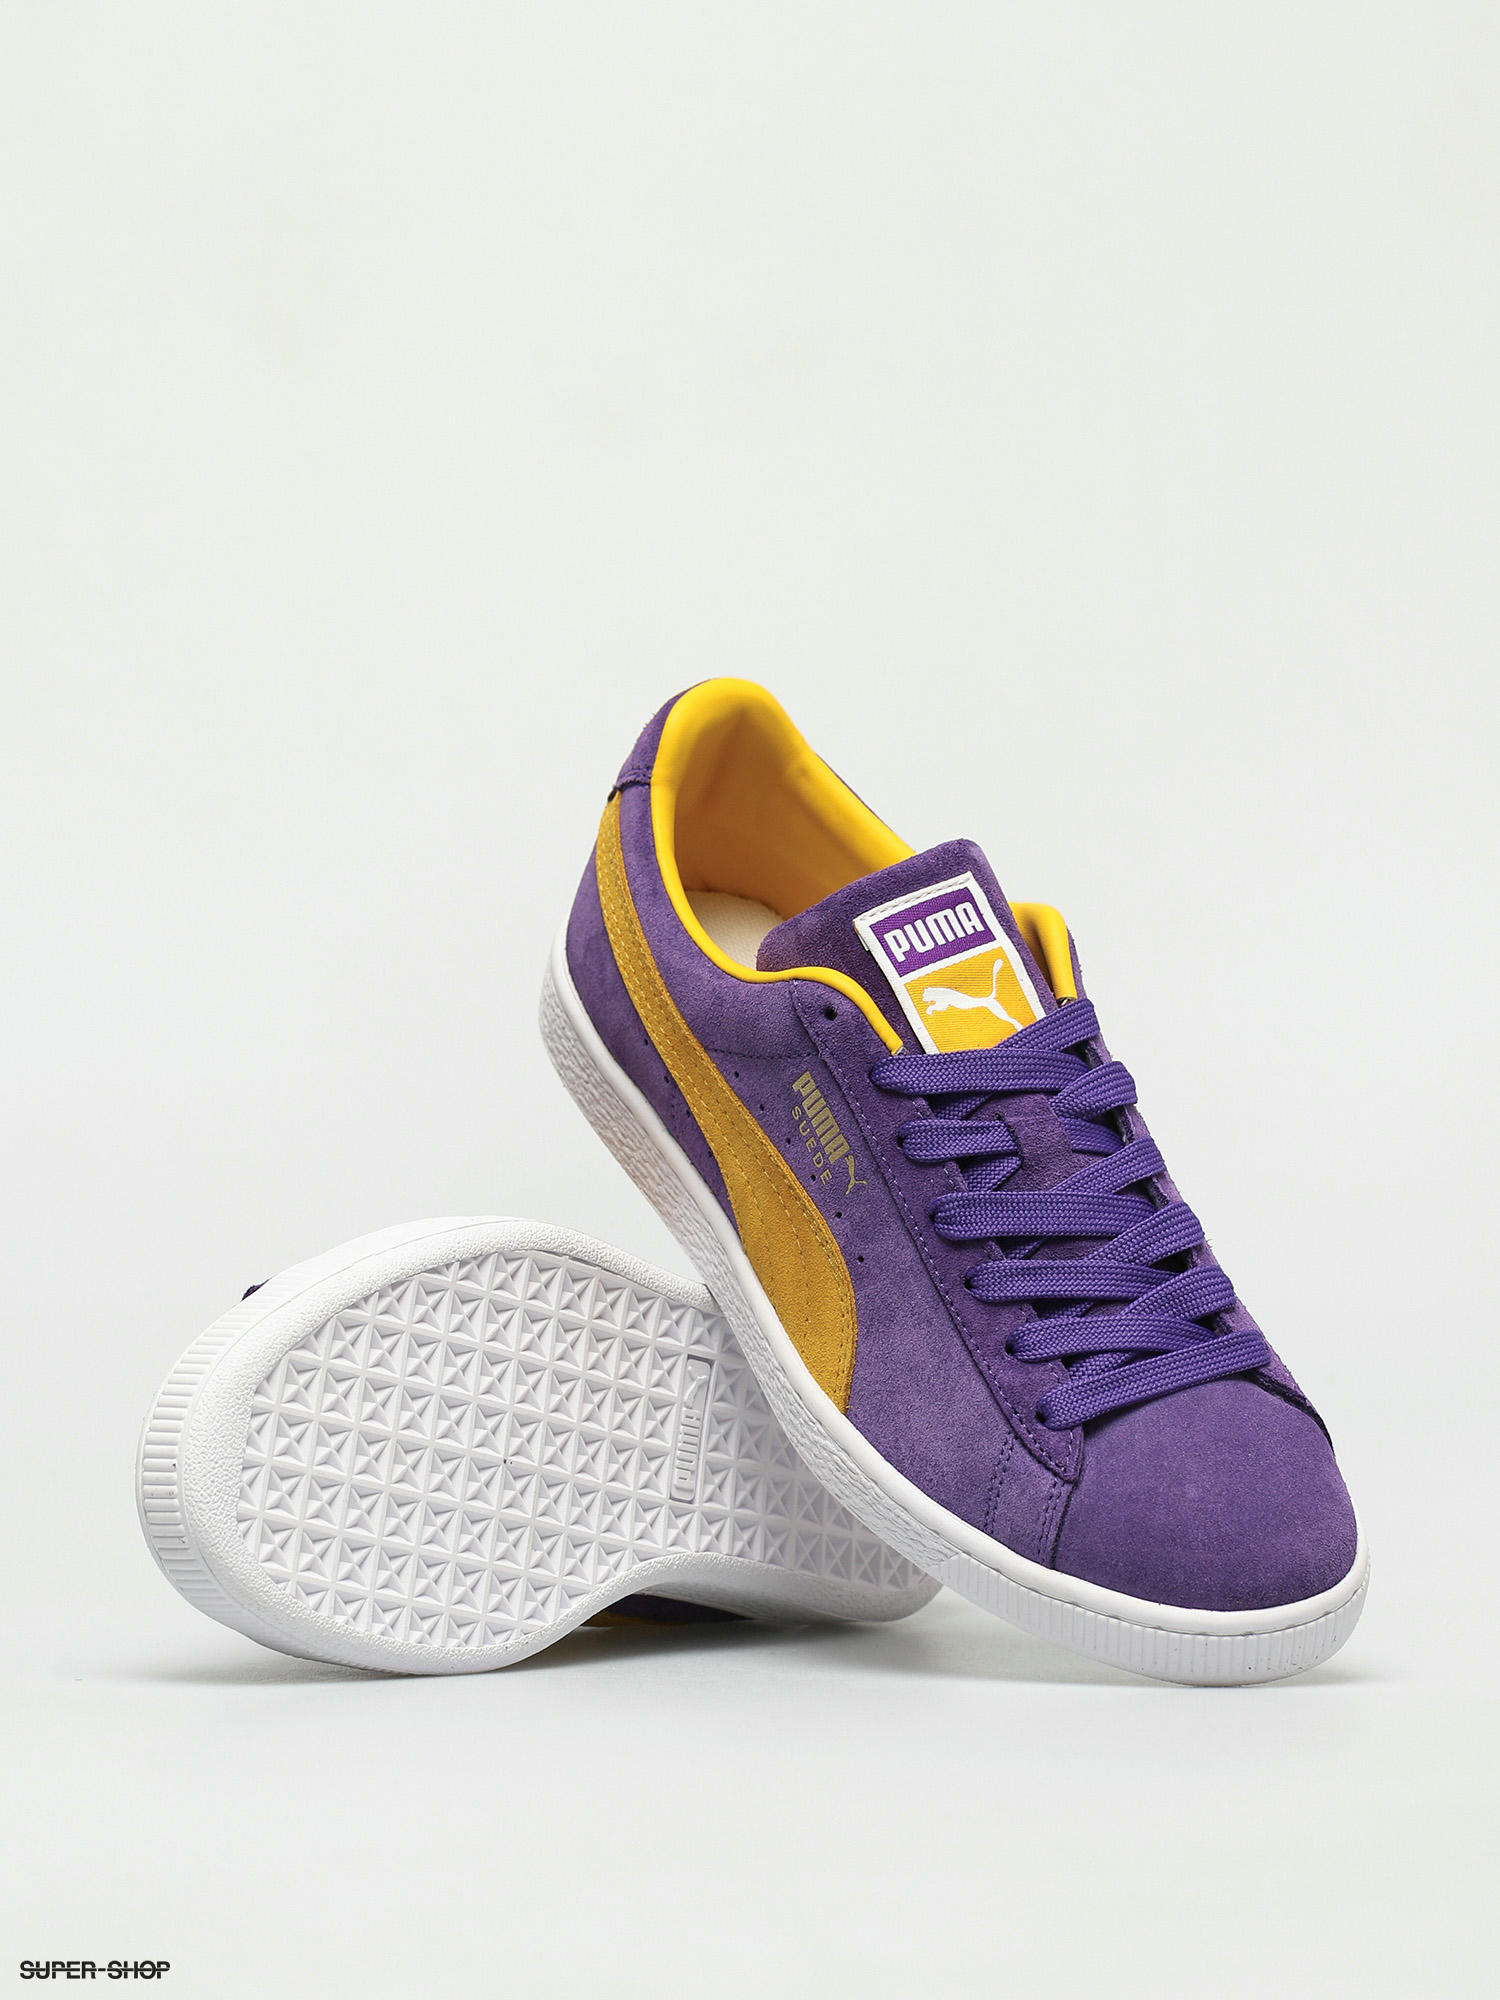 Puma Suede Teams Shoes (purple)